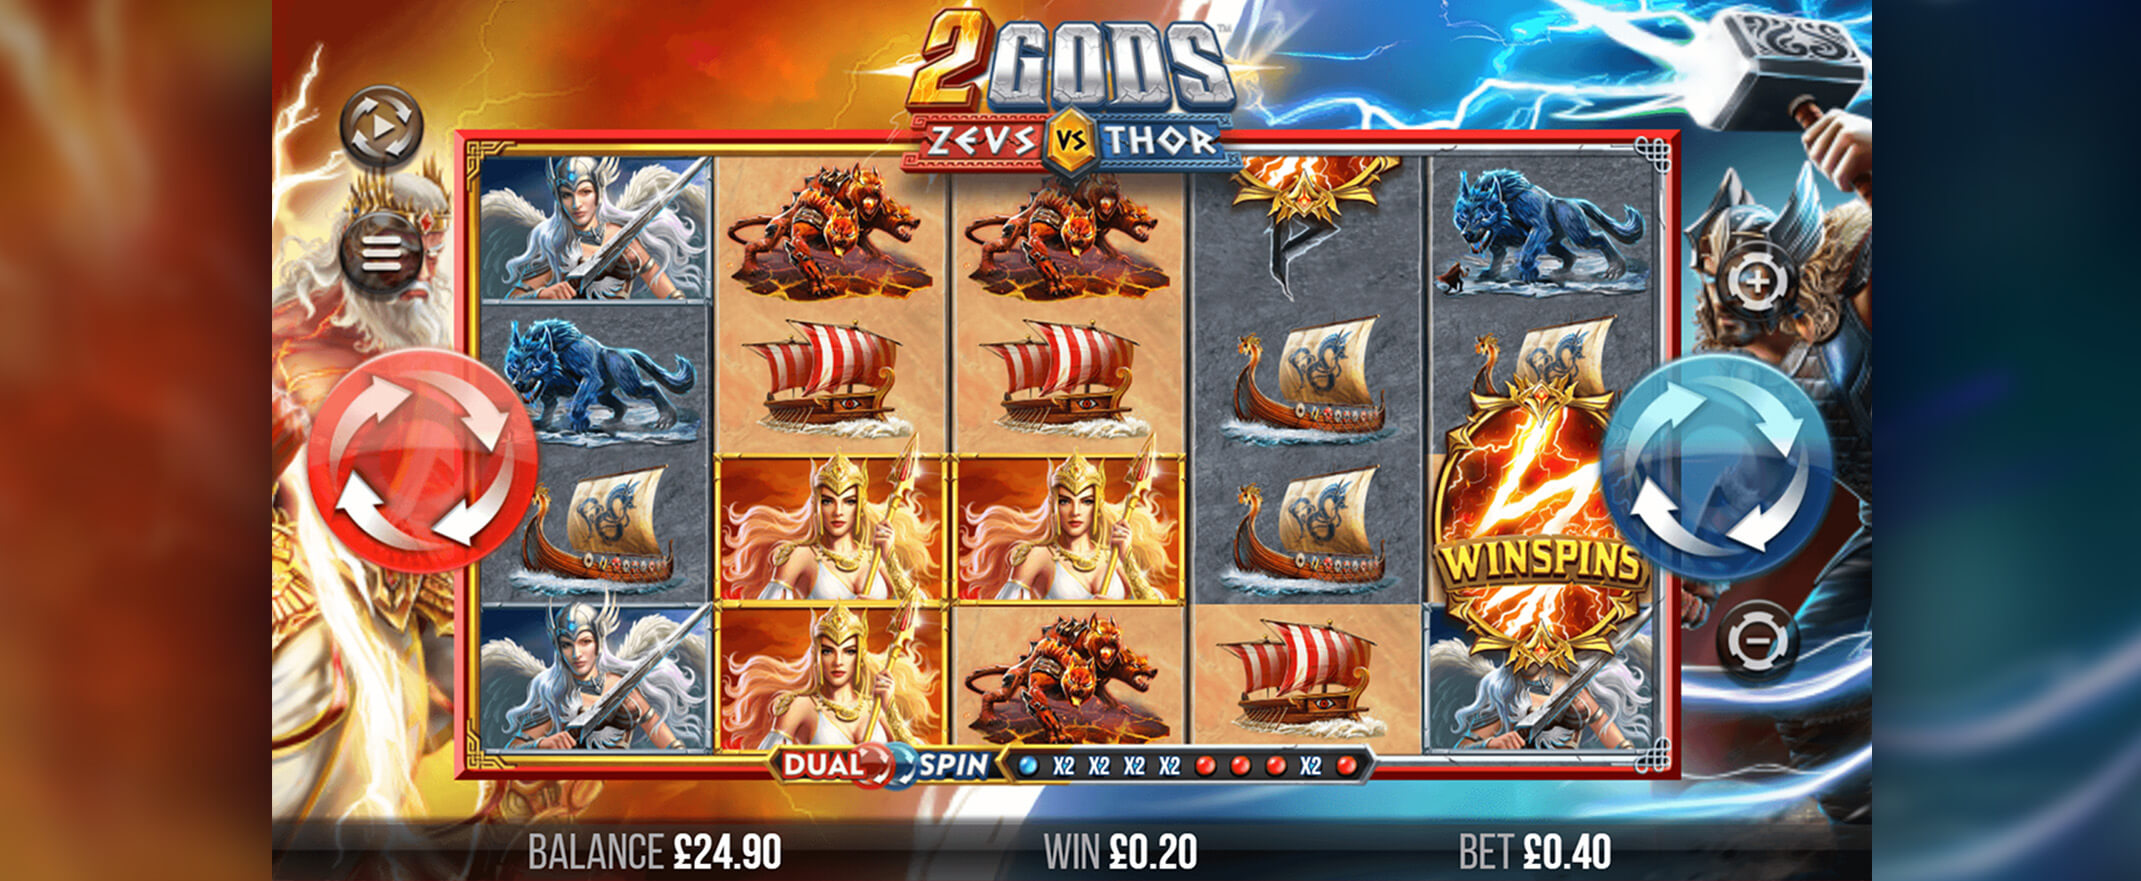 2 Gods Zeus vs. Thor Spielautomaten Bewertung, Walzen & Symbolen